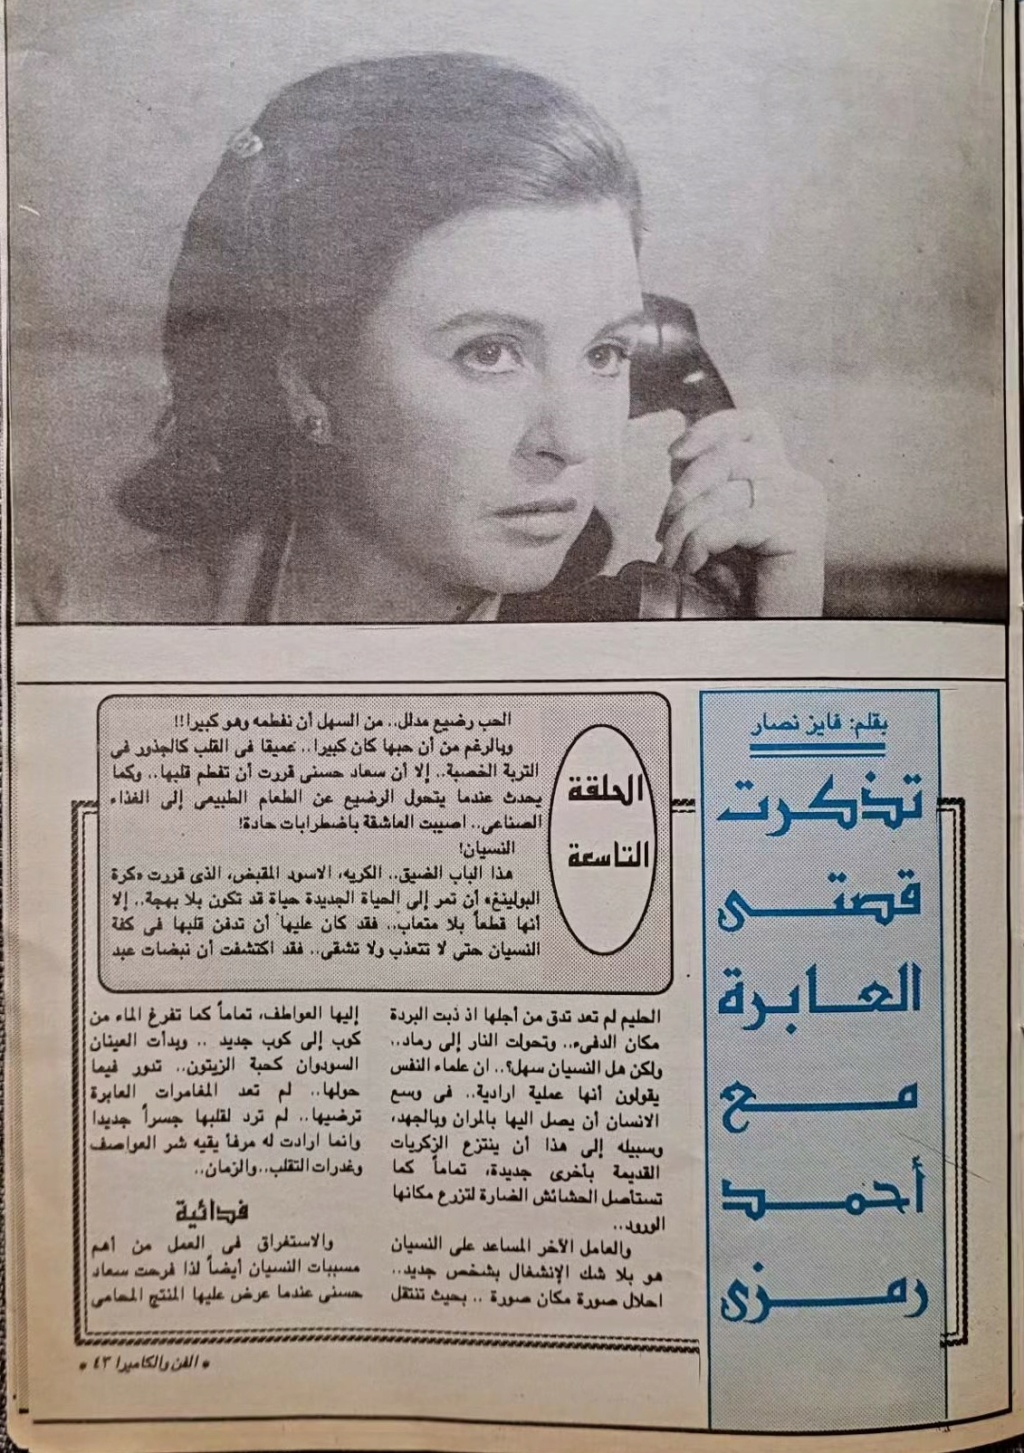 صحفي - مقال صحفي : سعاد حسني تتذكر .. اختفيت وحبيبي الجديد وراء الأهرام 1992 م 289